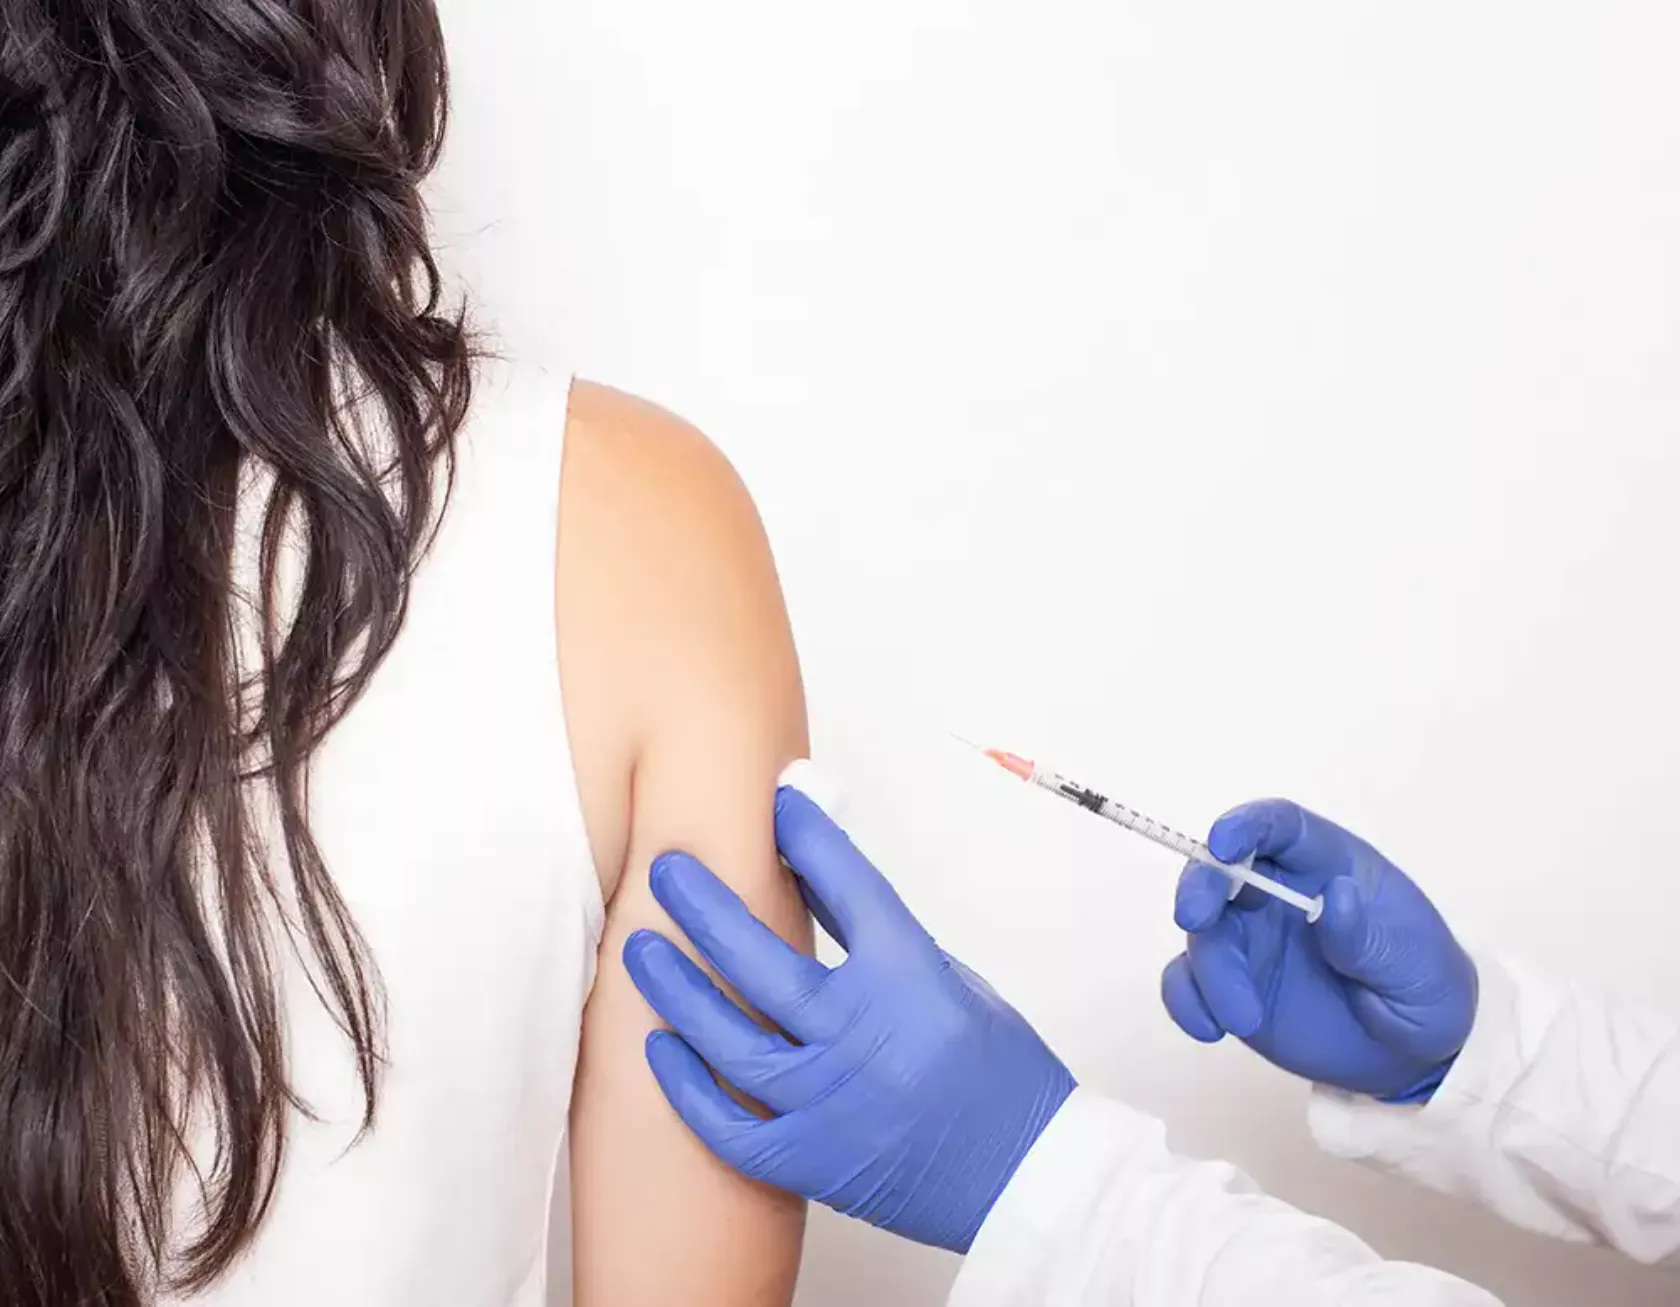 Eine Frau erhält eine Impfung in den rechten Oberarm, von hinten gesehen.